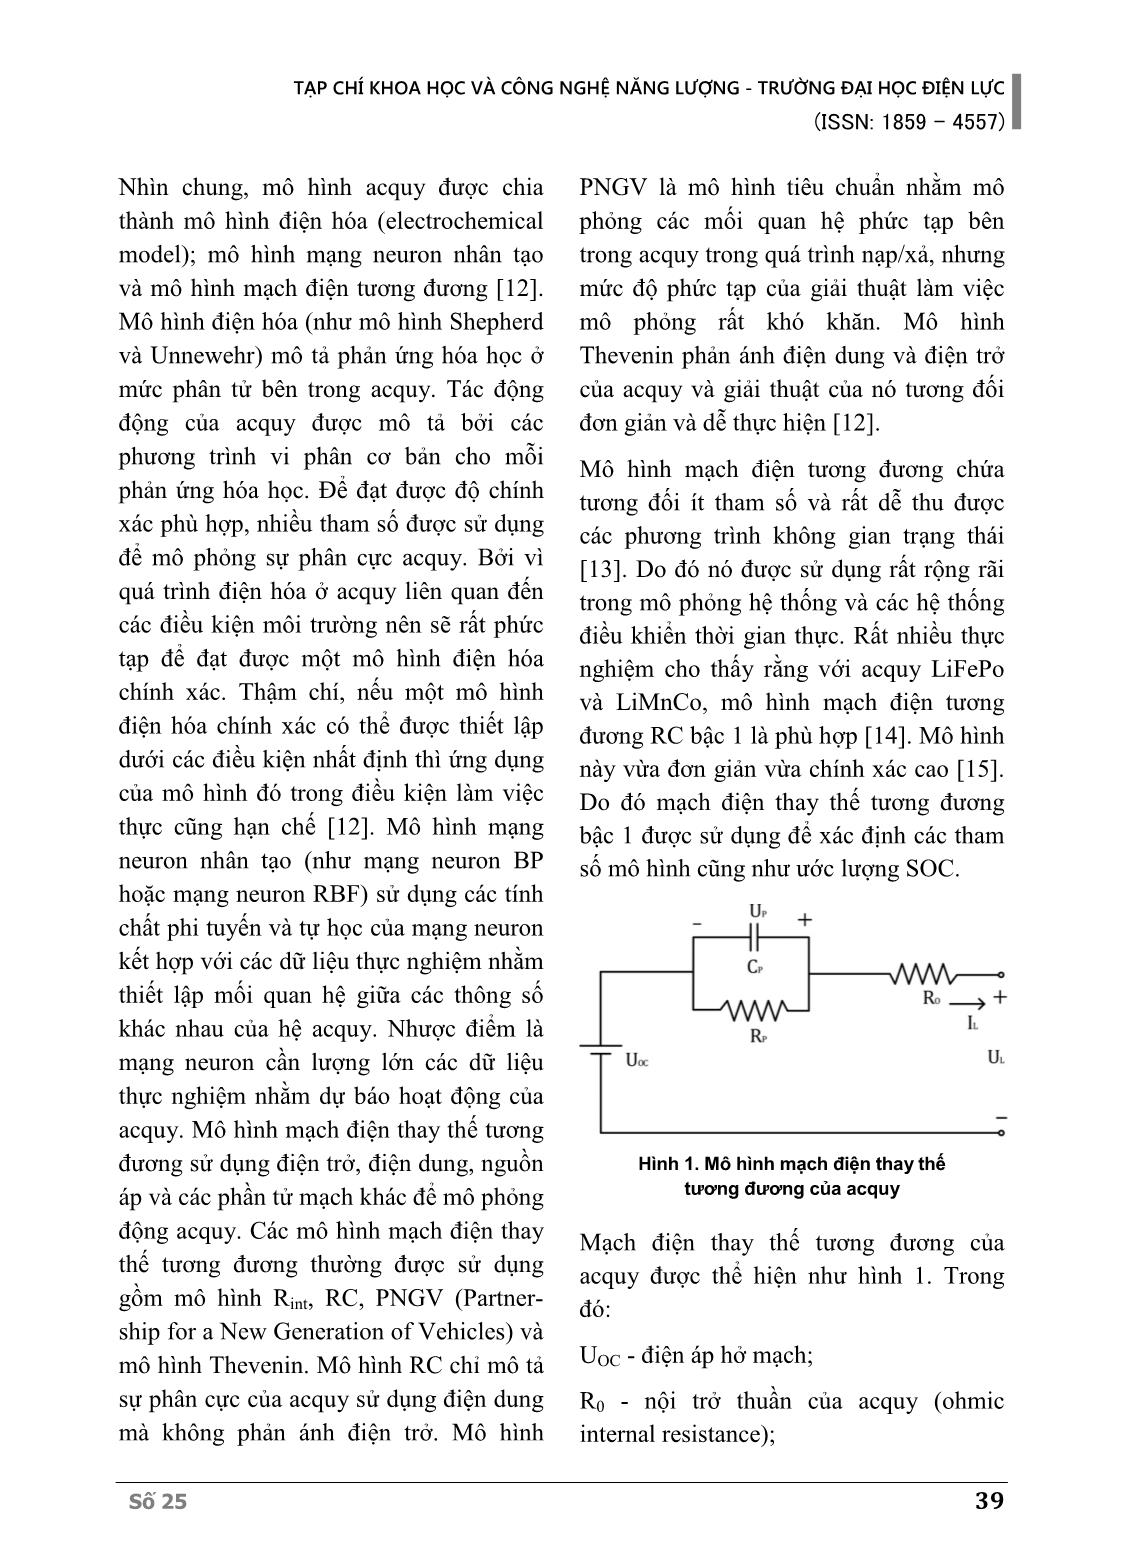 Bài toán đánh giá, so sánh kinh tế - kỹ thuật các phương án trạm sạc xe đạp điện sử dụng điện mặt trời tại trường Đại học Điện lực trang 4